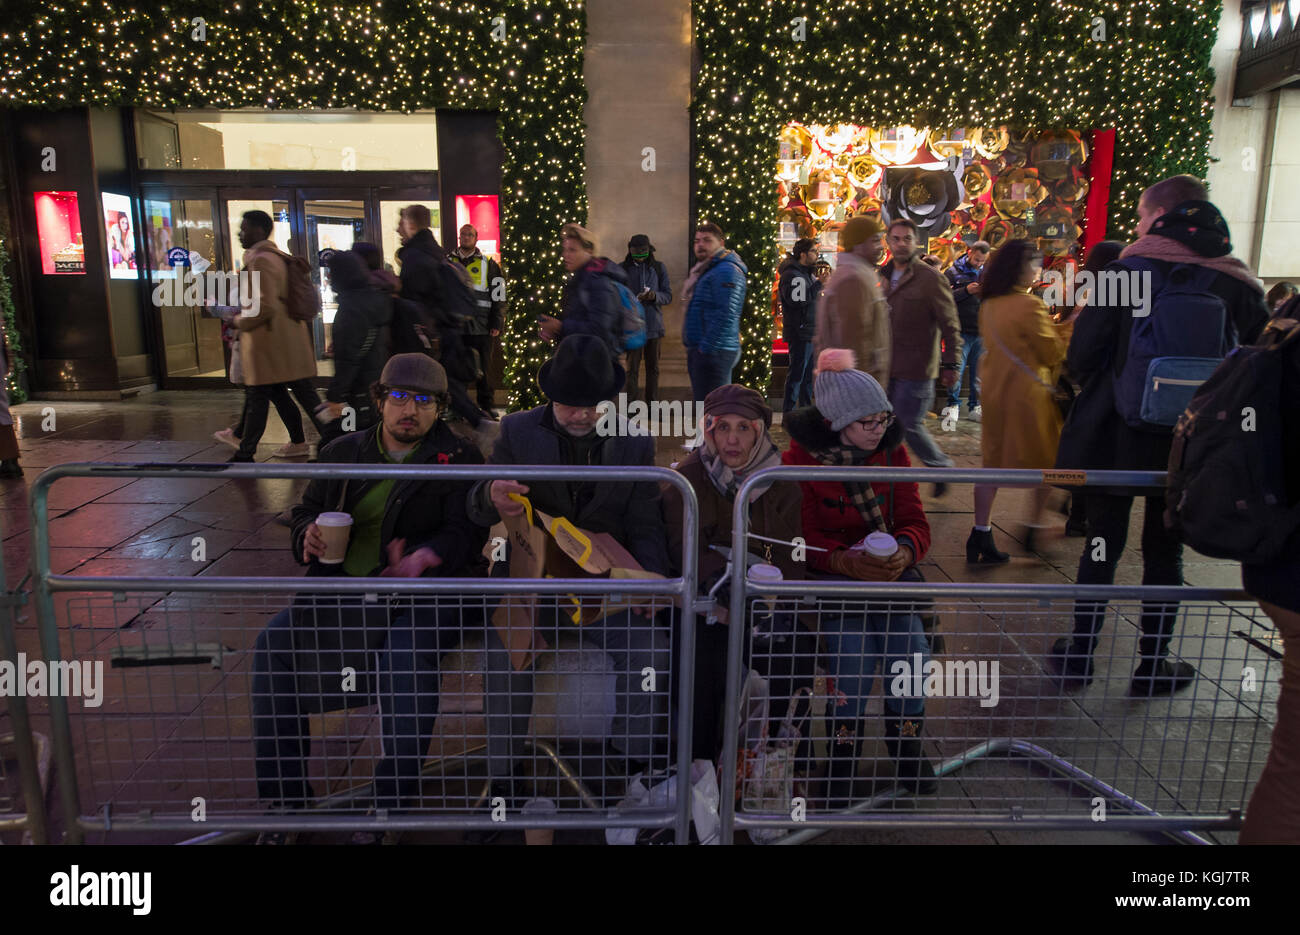 Il West End, Londra, Regno Unito. 7 Nov 2017. I negozi del West End di Londra si accergono per la stagione natalizia di notte le luci di Oxford Street si accendono. Un gruppo di acquirenti attende la cerimonia di accensione fuori Selfridges in Oxford Street. Credit: Malcolm Park/Alamy Live News. Foto Stock